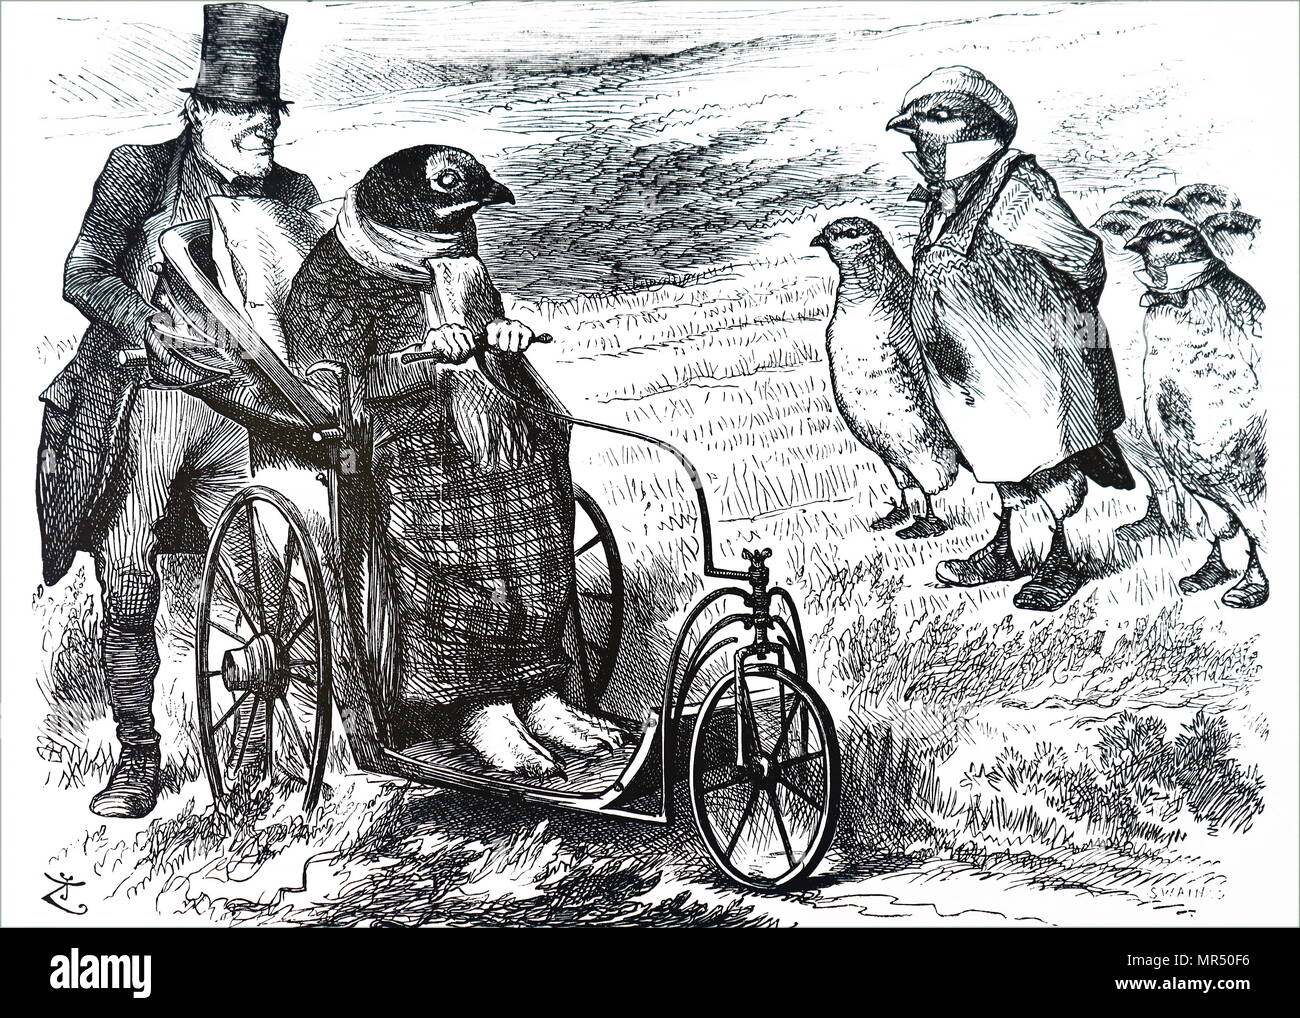 Cartoon kommentierte die Aussetzung der Grouse aufgrund der sehr niedrigen Zahlen der Rasse. Illustriert von John Tenniel (1820-1914) ein englischer Illustrator Grafik Humorist und politischen Karikaturisten. Vom 19. Jahrhundert Stockfoto